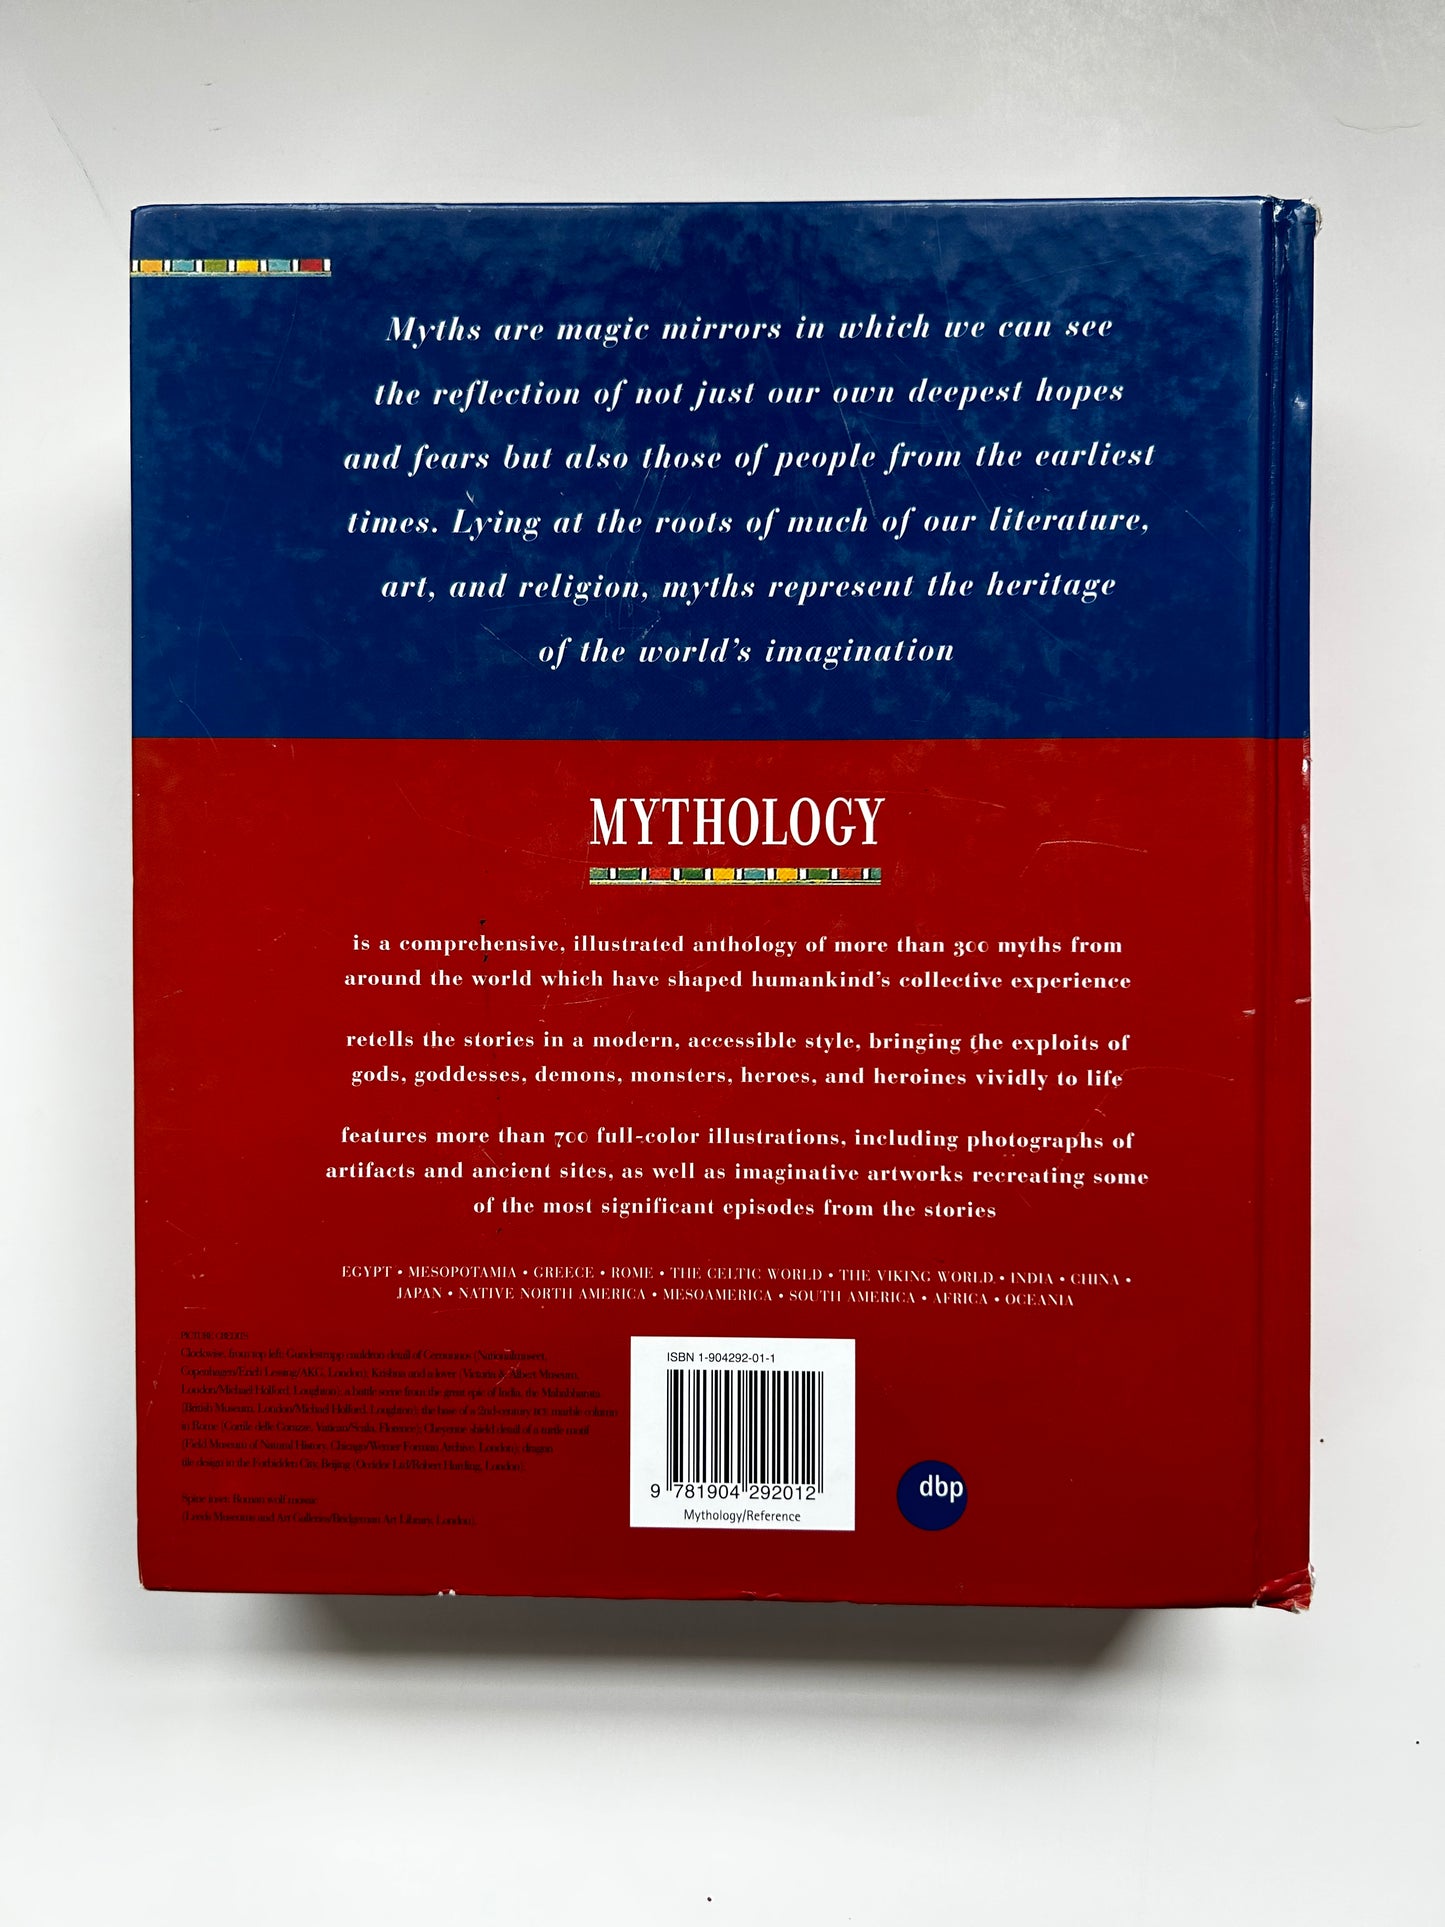 Mythology: The Illustrated Anthology of World Myth and Storytelling